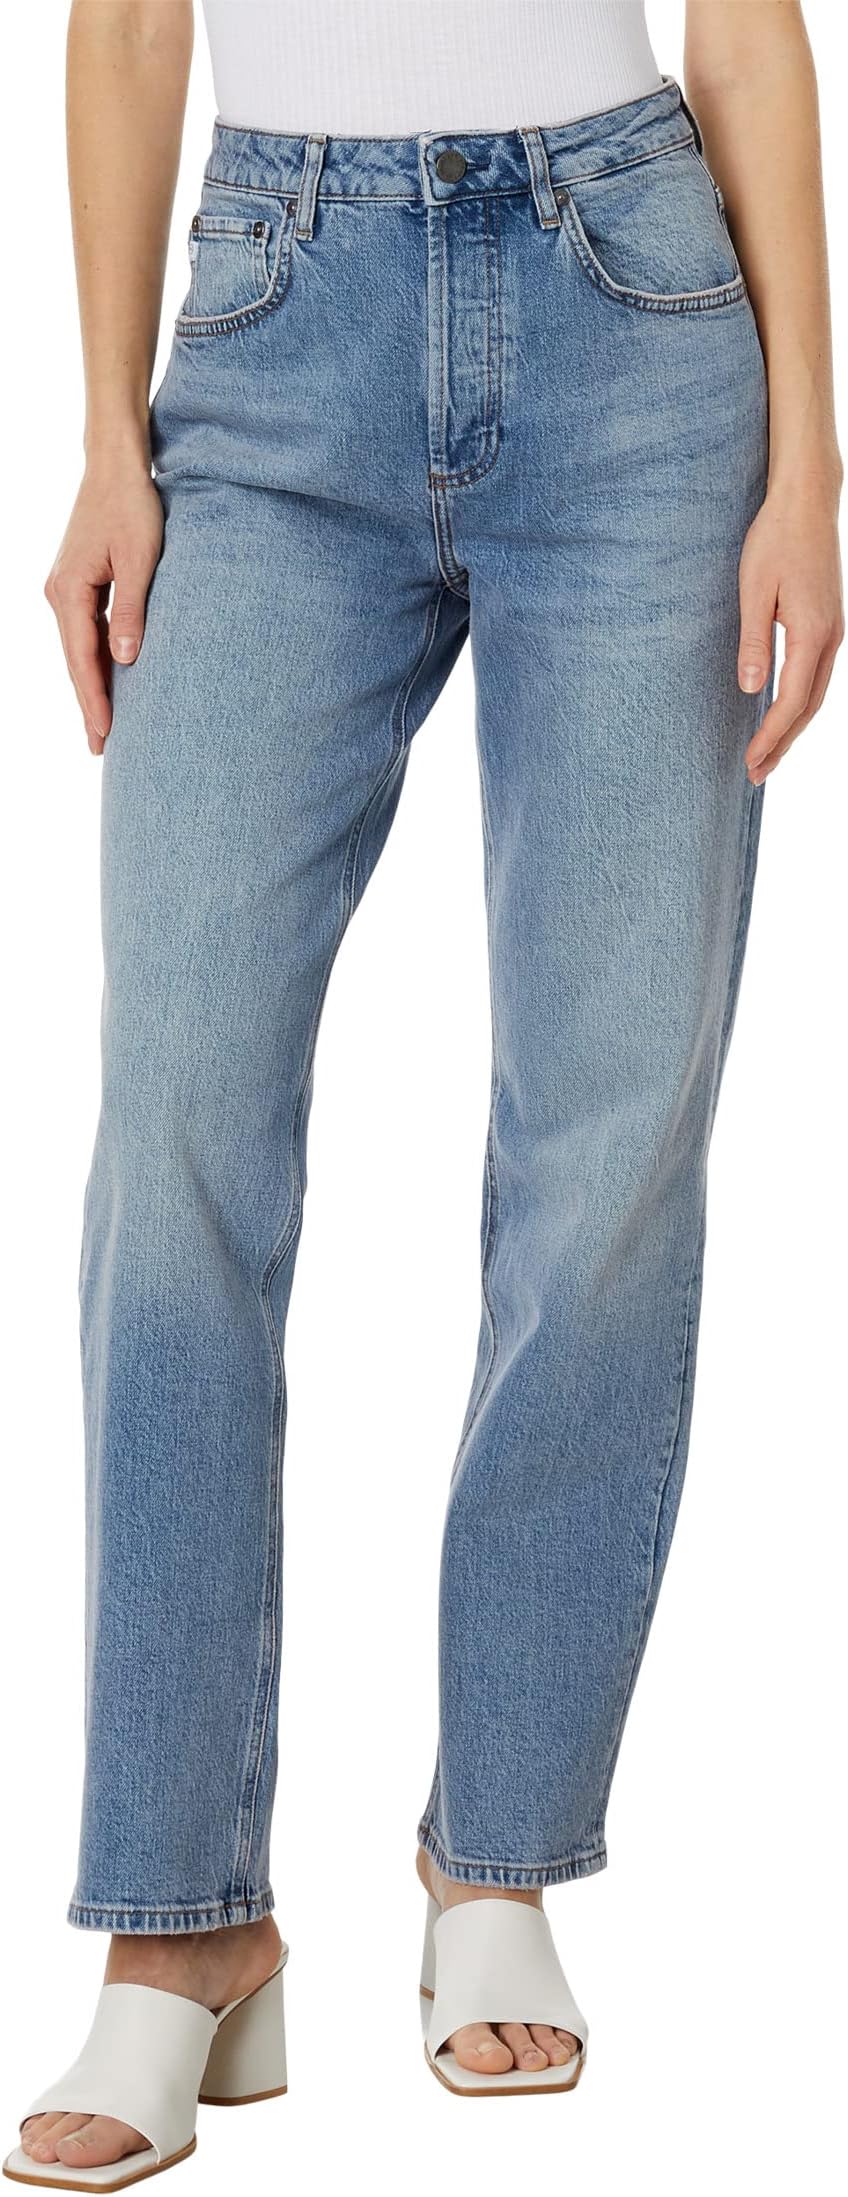 Джинсы Clove Relaxed Vintage Straight in Southwest AG Jeans, цвет Southwest